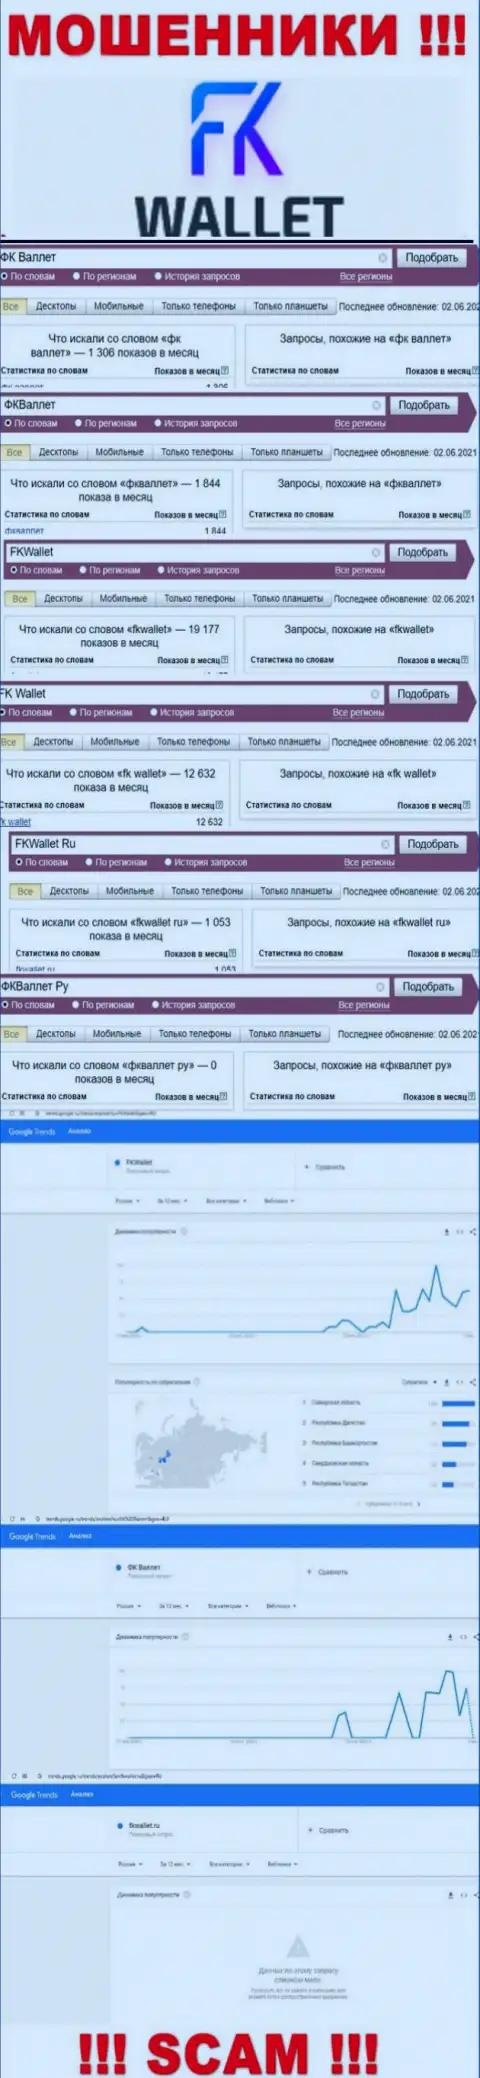 Скриншот статистических показателей онлайн-запросов по противозаконно действующей организации FKWallet Ru